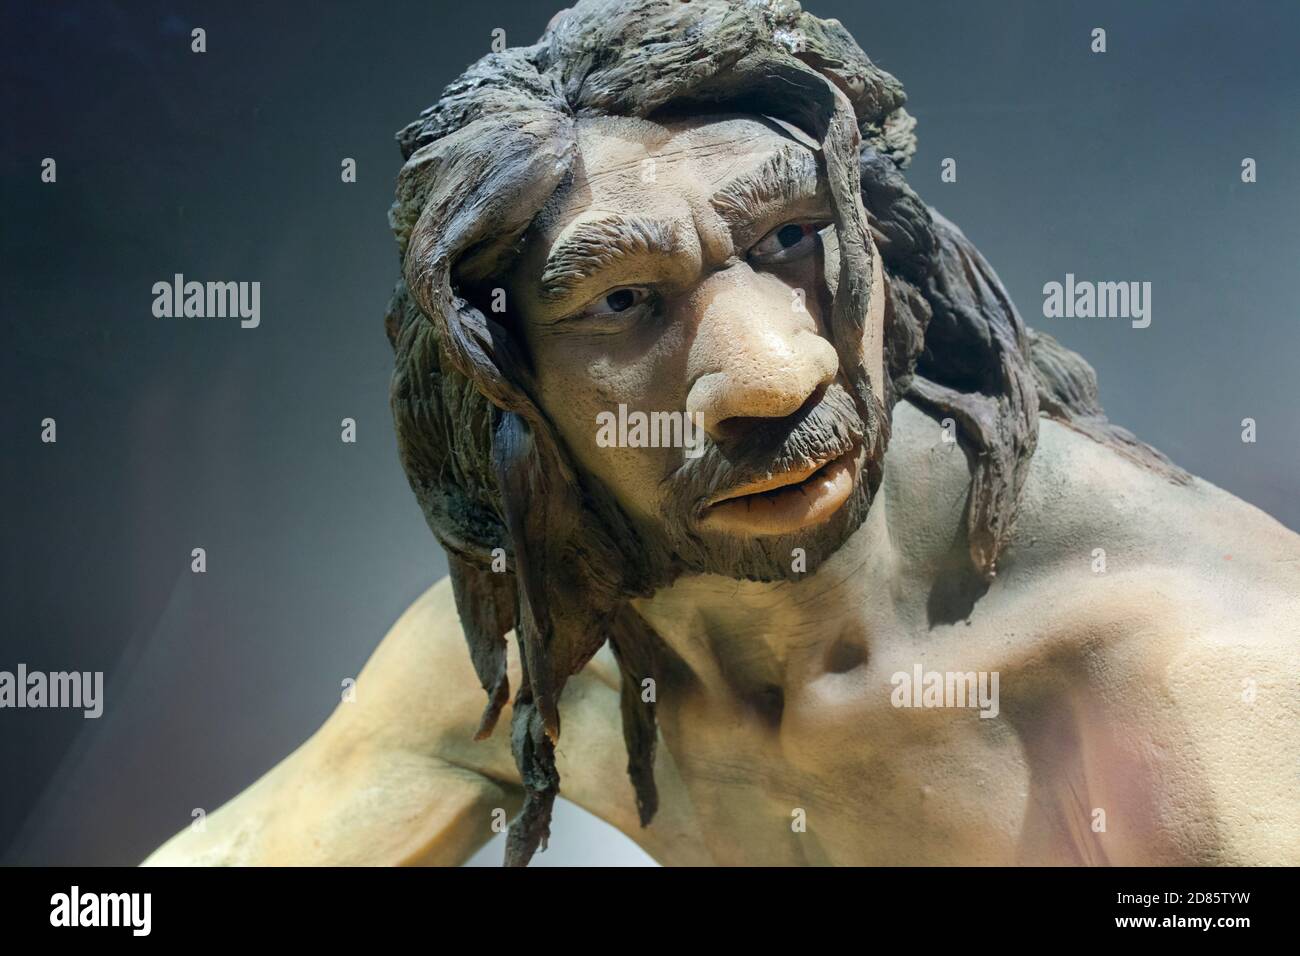 Lebensgroße Skulptur des Homo heidelbergensis. Regionales Archäologisches Museum von Madrid. Nahaufnahme des Gesichts. Alcala de Henares, Spanien Stockfoto